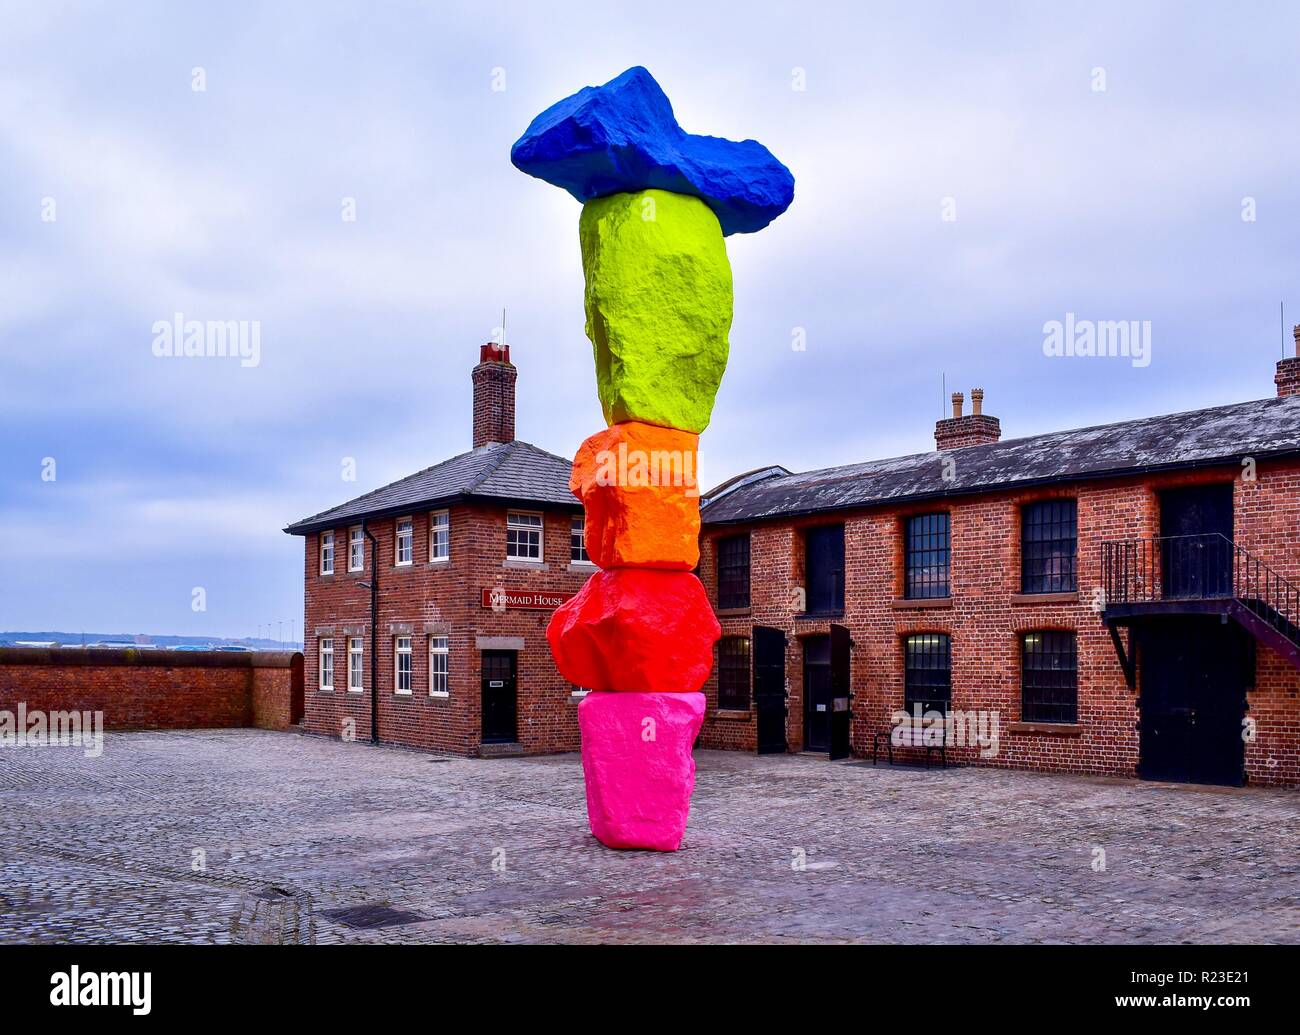 The Liverpool Mountain art installation. Stock Photo